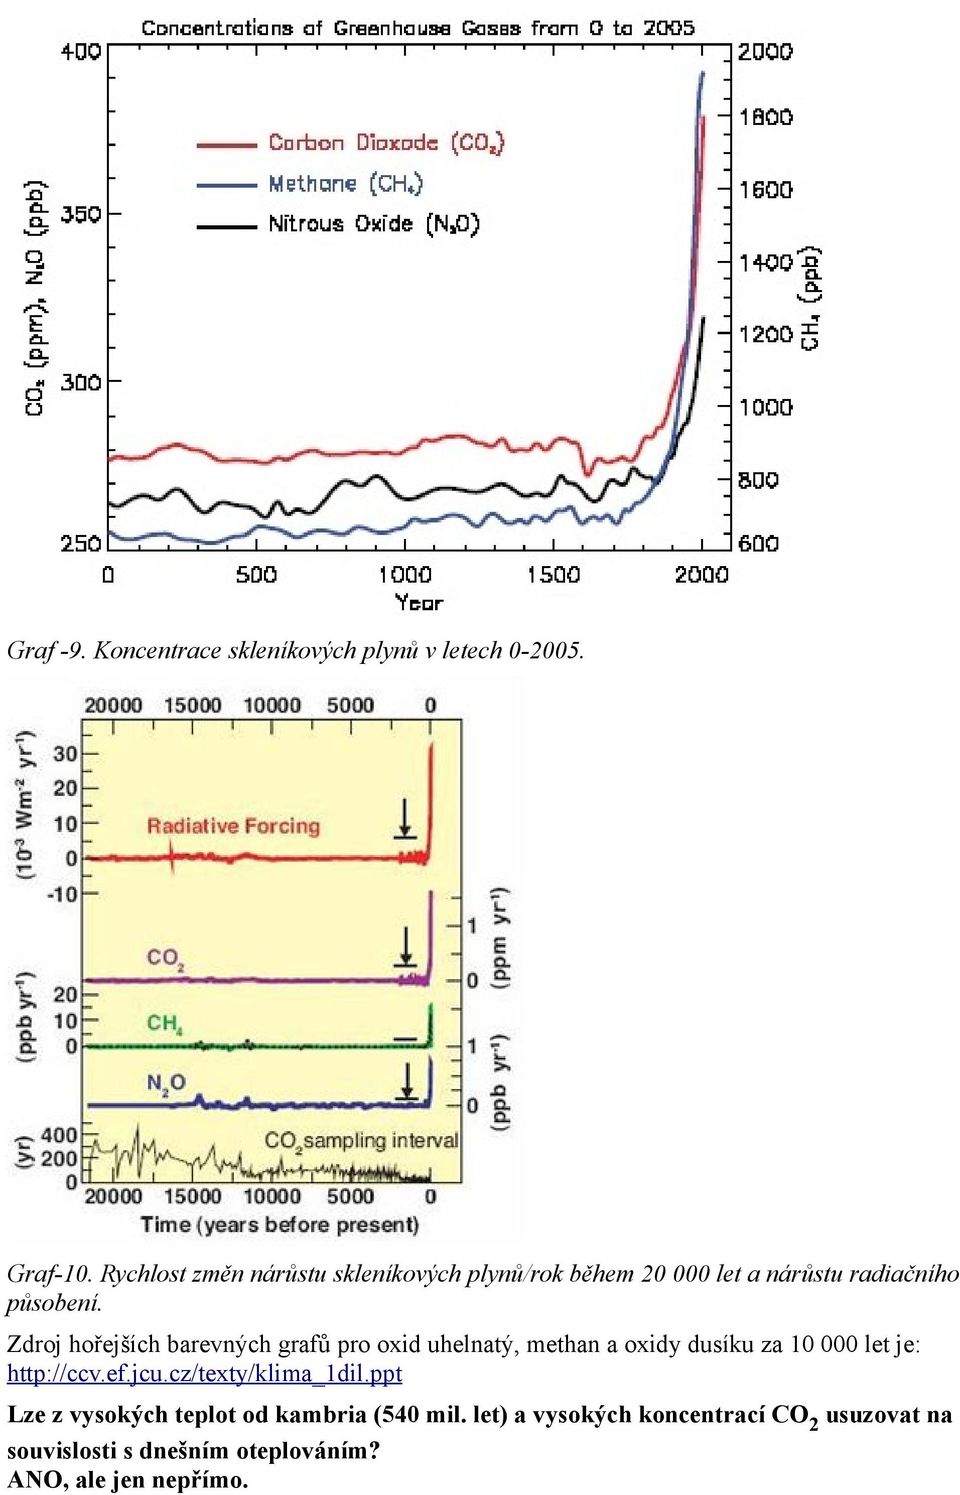 Zdroj hořejších barevných grafů pro oxid uhelnatý, methan a oxidy dusíku za 10 000 let je: http://ccv.ef.jcu.